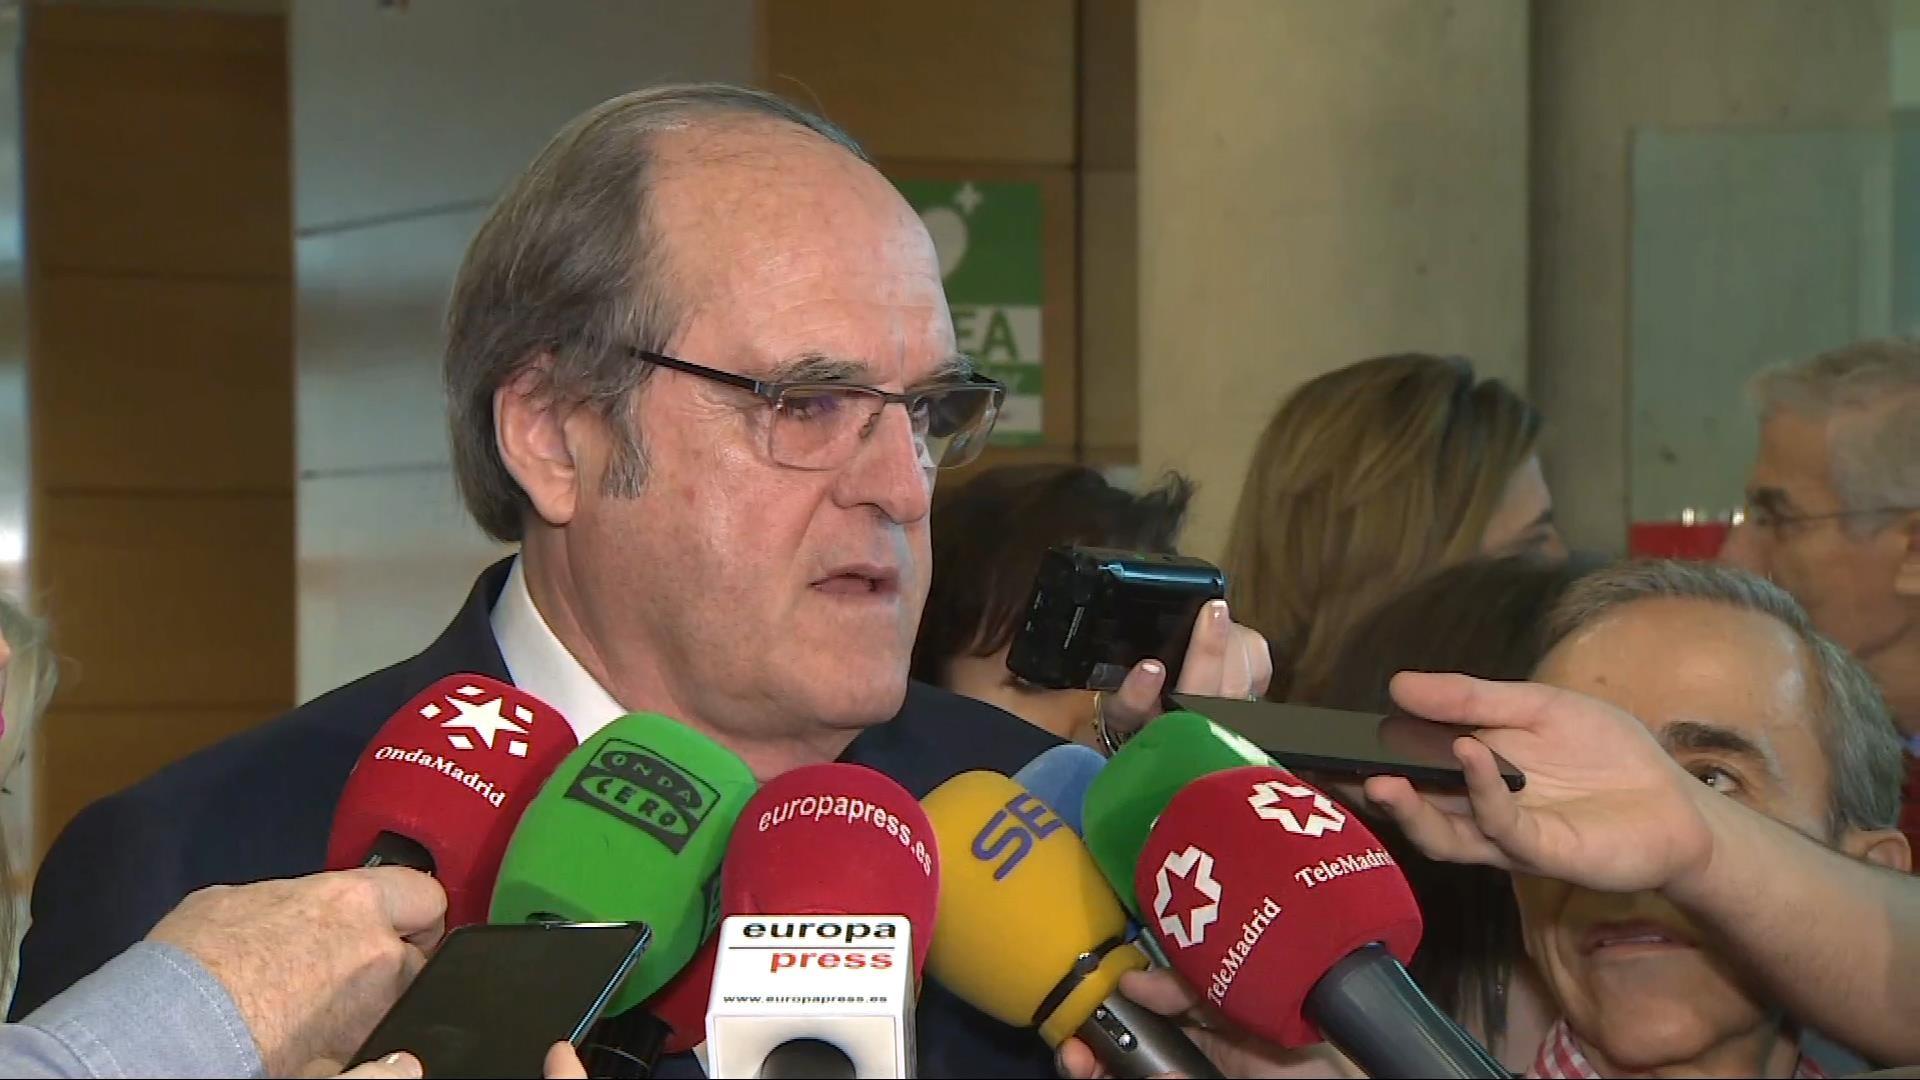 El portavoz del PSOE en la Asamblea de Madrid, Ángel Gabilondo. Fuente: Europa Press.